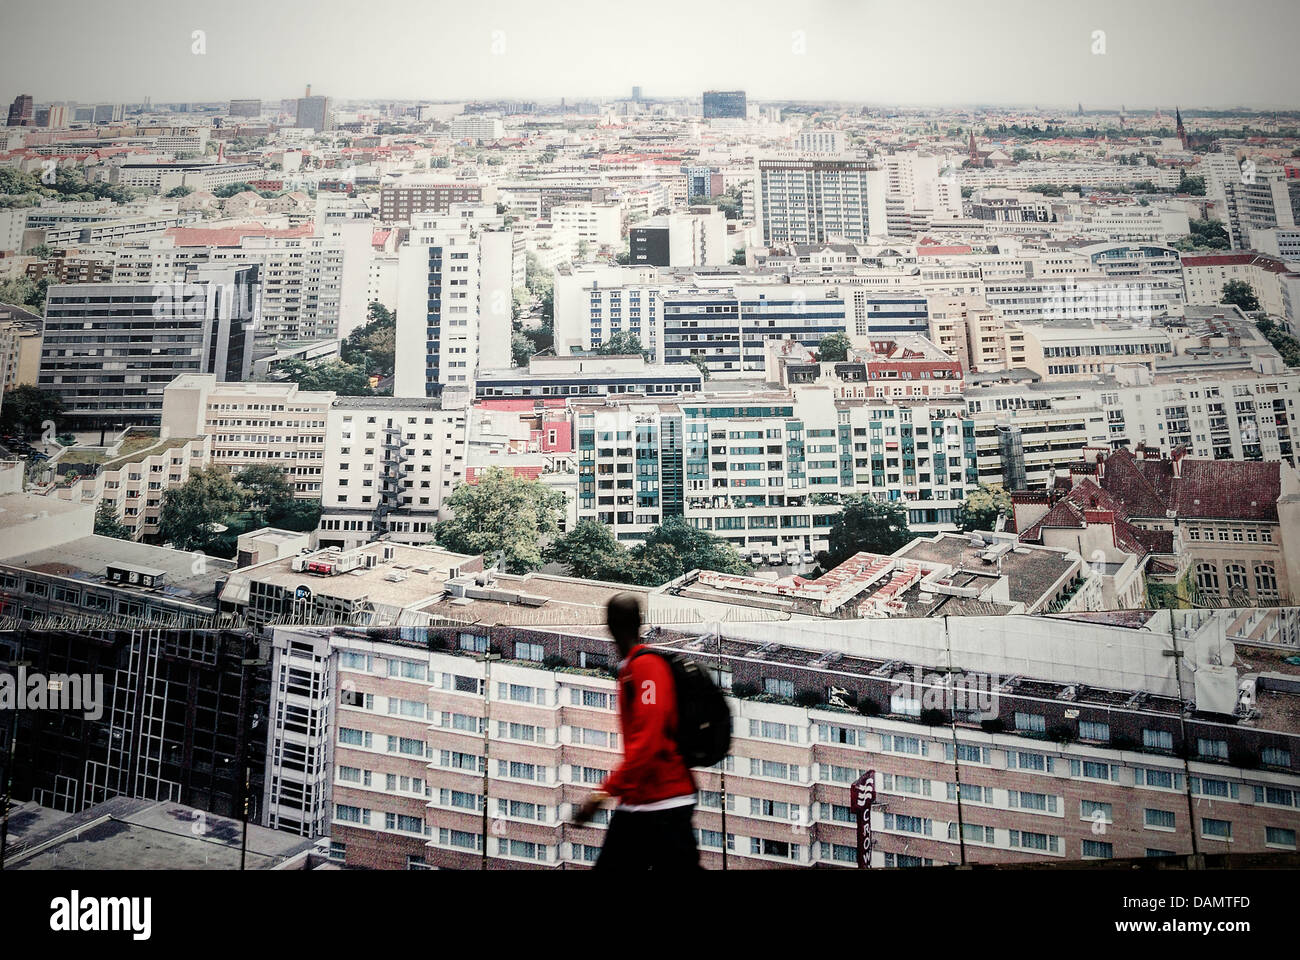 Germania Berlino. Uomo nero camminare vicino a una grande città tabellone a parete Foto Stock